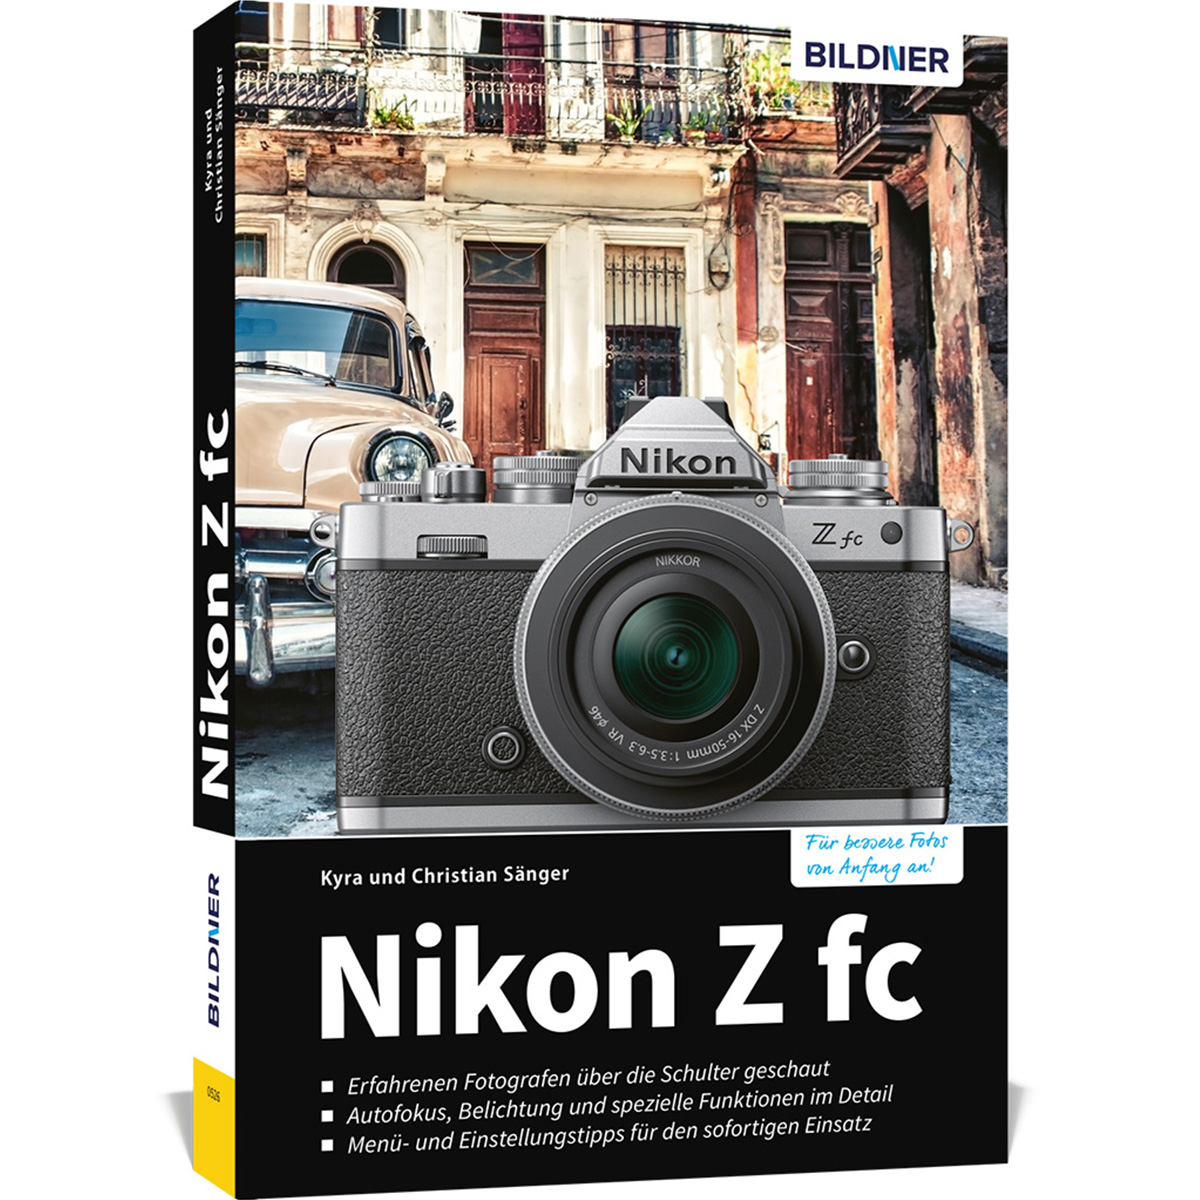 Kamera fc - Das Nikon zu Z Praxisbuch umfangreiche Ihrer